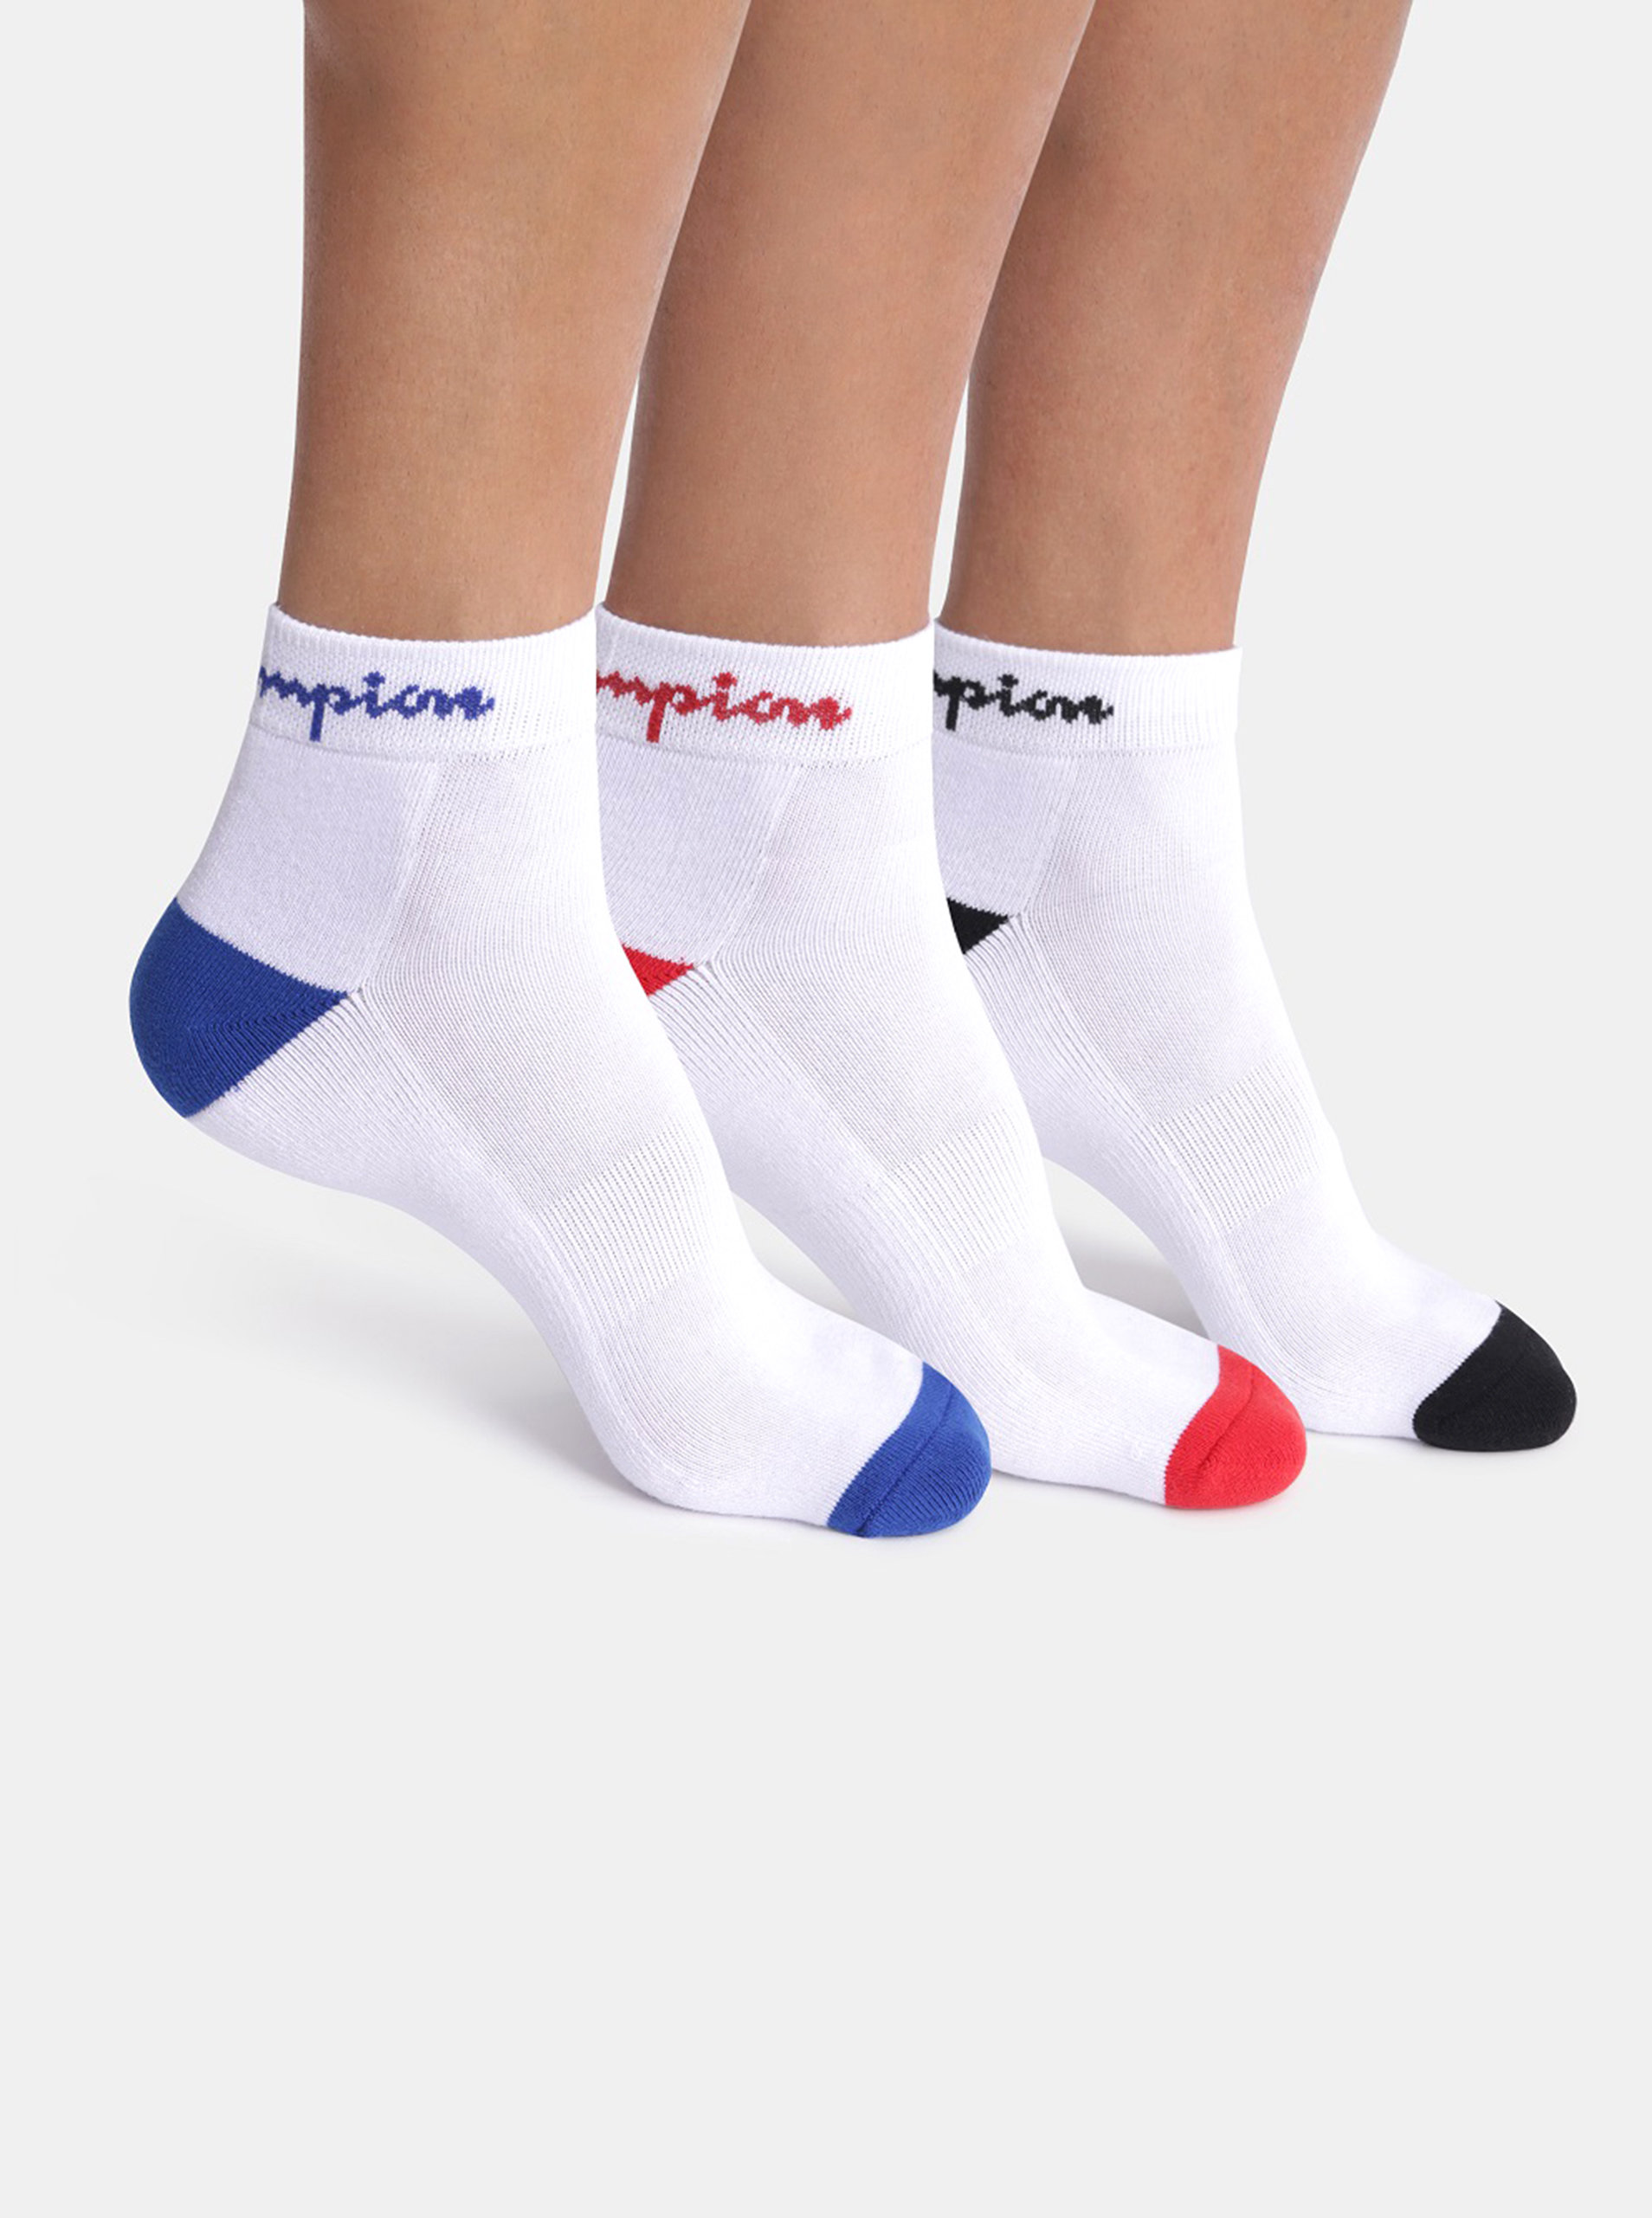 CHAMPION CREW ANKLE SOCKS 3 ks - Sportovní kotníkové ponožky s logem Champion 3 páry - bílá - červená - modrá